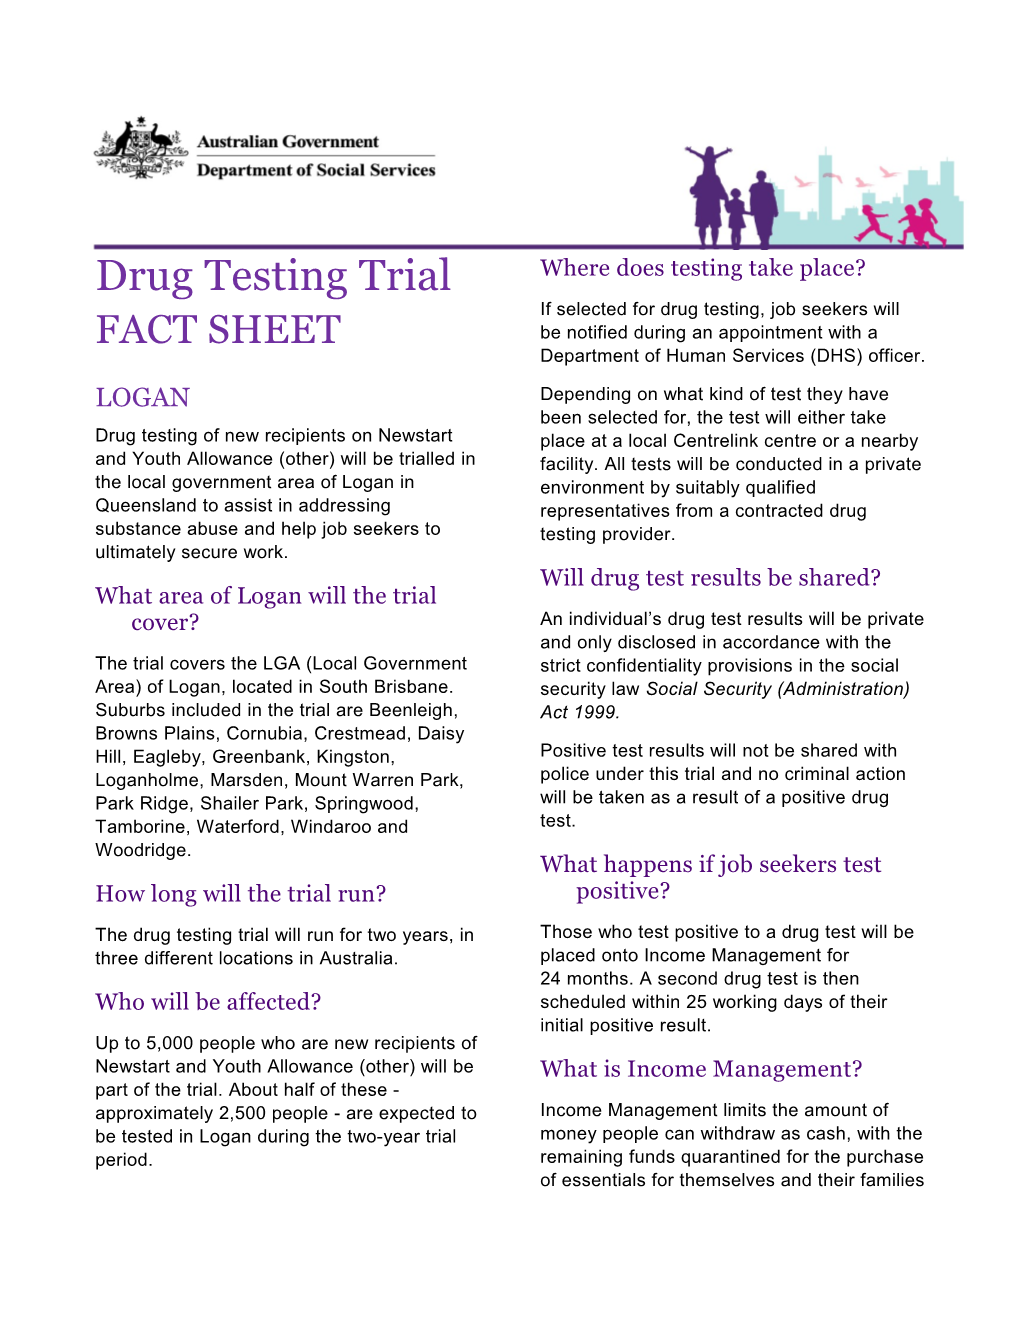 Drug Testing Trial Fact Sheet - Logan